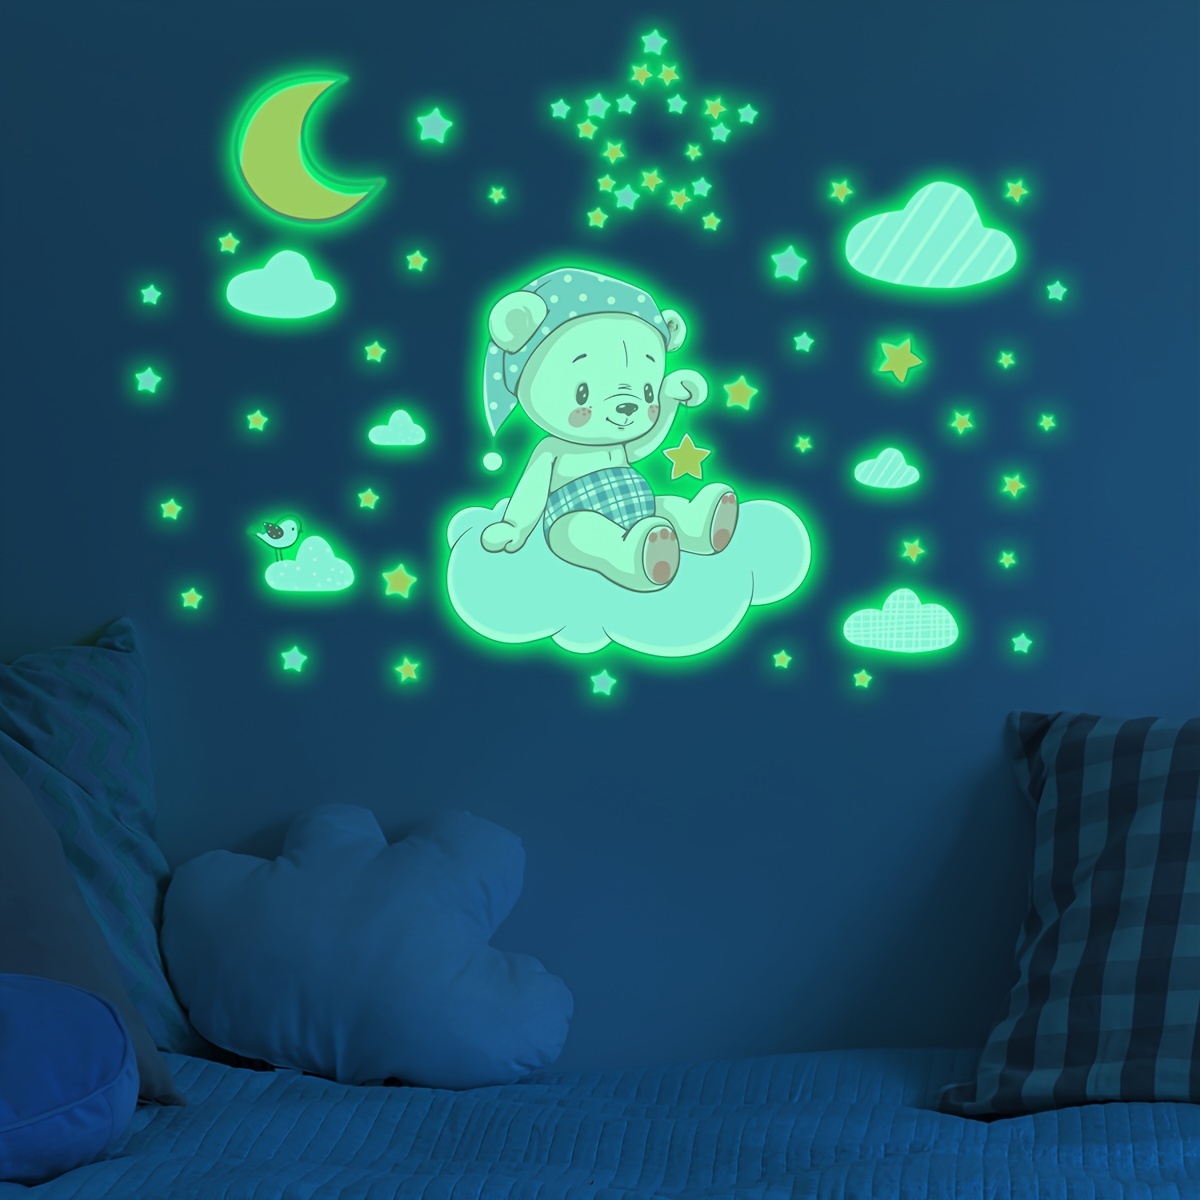 100 piezas/500 piezas estrellas luminosas 3D/pegatinas de pared oscuras  para niños/dormitorio de bebé/decoración del techo del hogar, pegatinas de estrellas  fluorescentes/parches de estrellas de luz nocturna, pegatinas luminosas  coloridas que brillan en